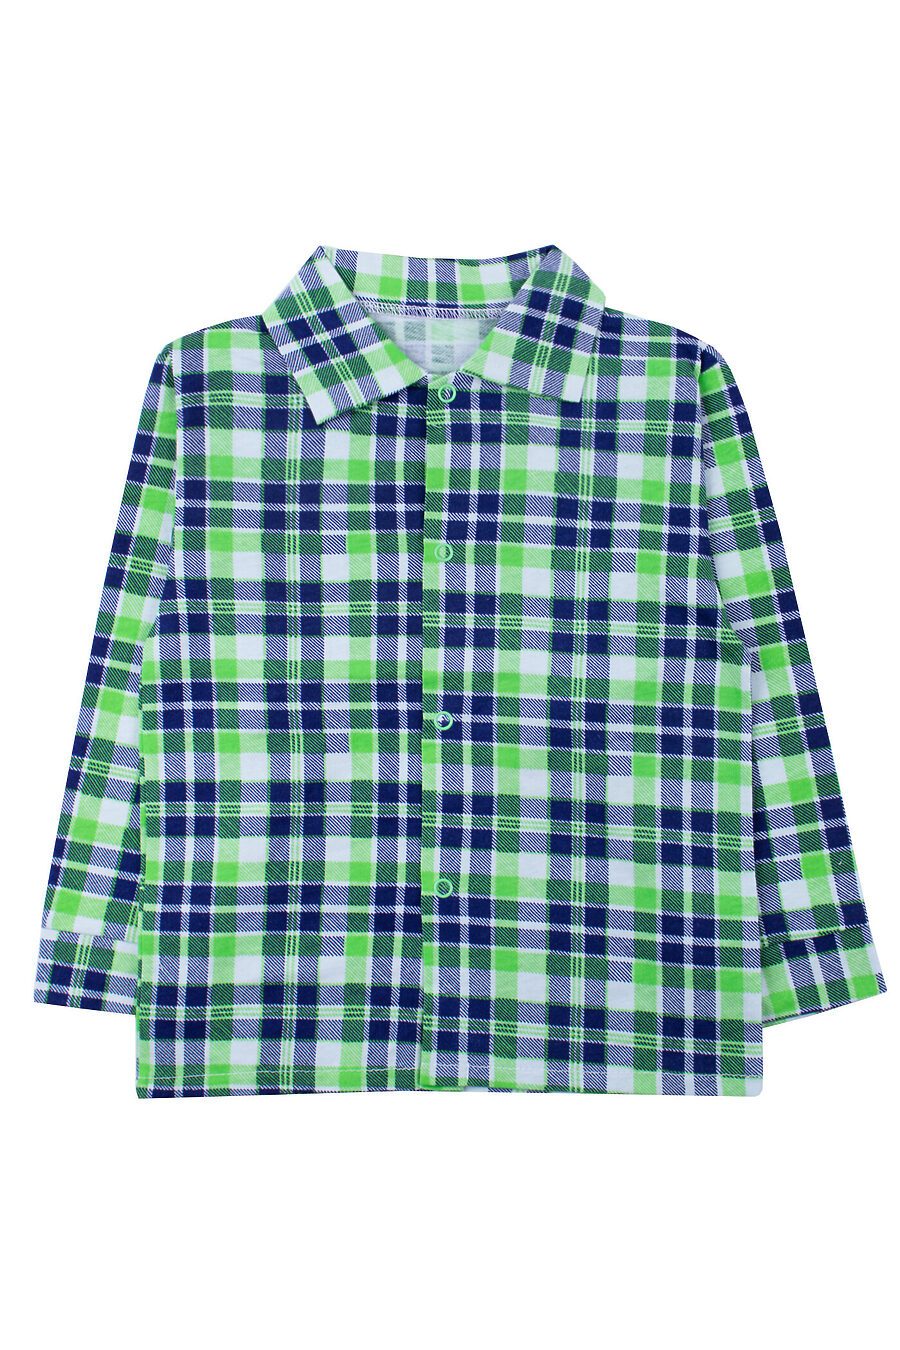 Рубашка YOULALA (742506), купить в Moyo.moda